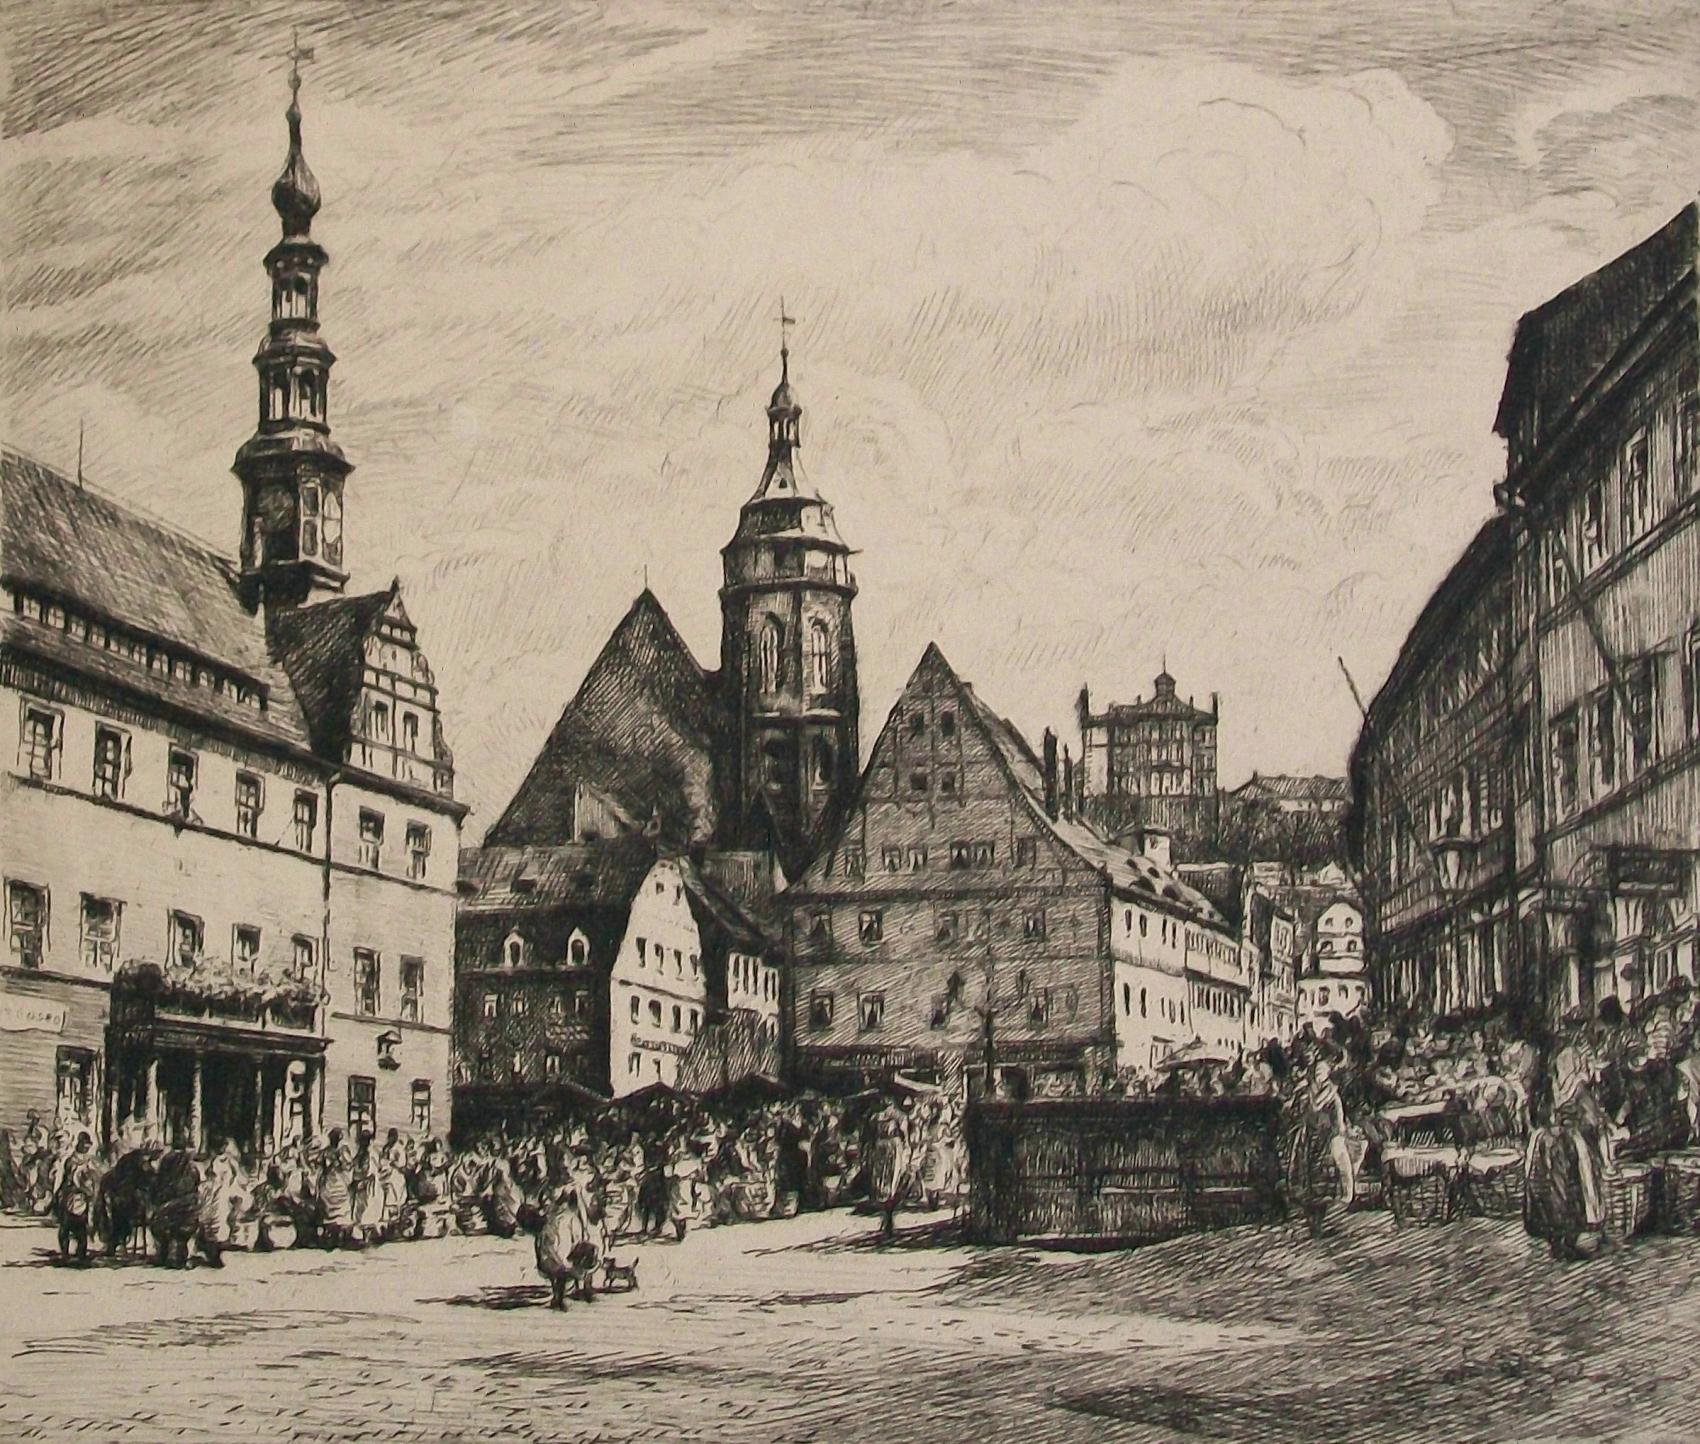 La Place du Marché à Pirna (D'après Bernardo Bellotto) - Gravure ancienne sur papier - titrée (en allemand) au crayon en bas à gauche - signée au crayon en bas à droite (artiste non identifié) - non encadrée - Allemagne - 18e/19e siècle. 

Bon